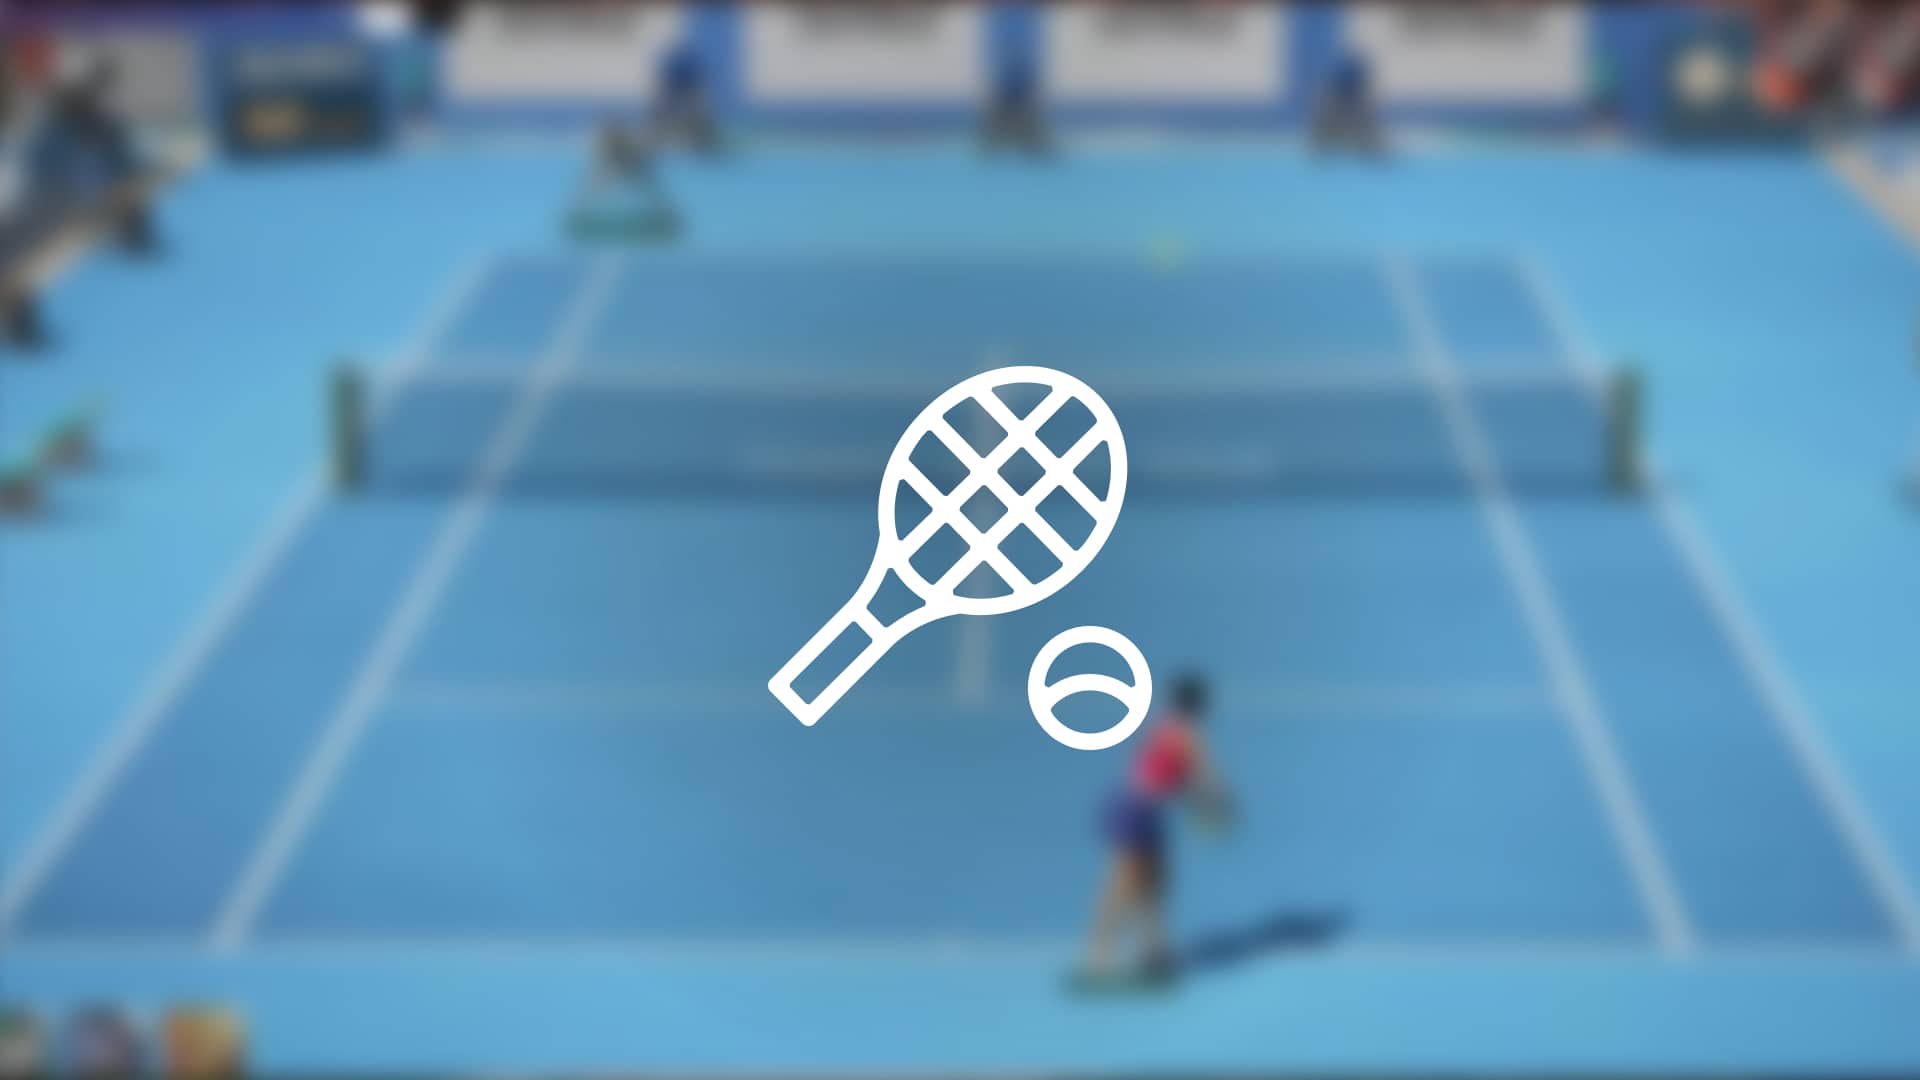 Disfruta de todo el tenis online en España al mejor precio